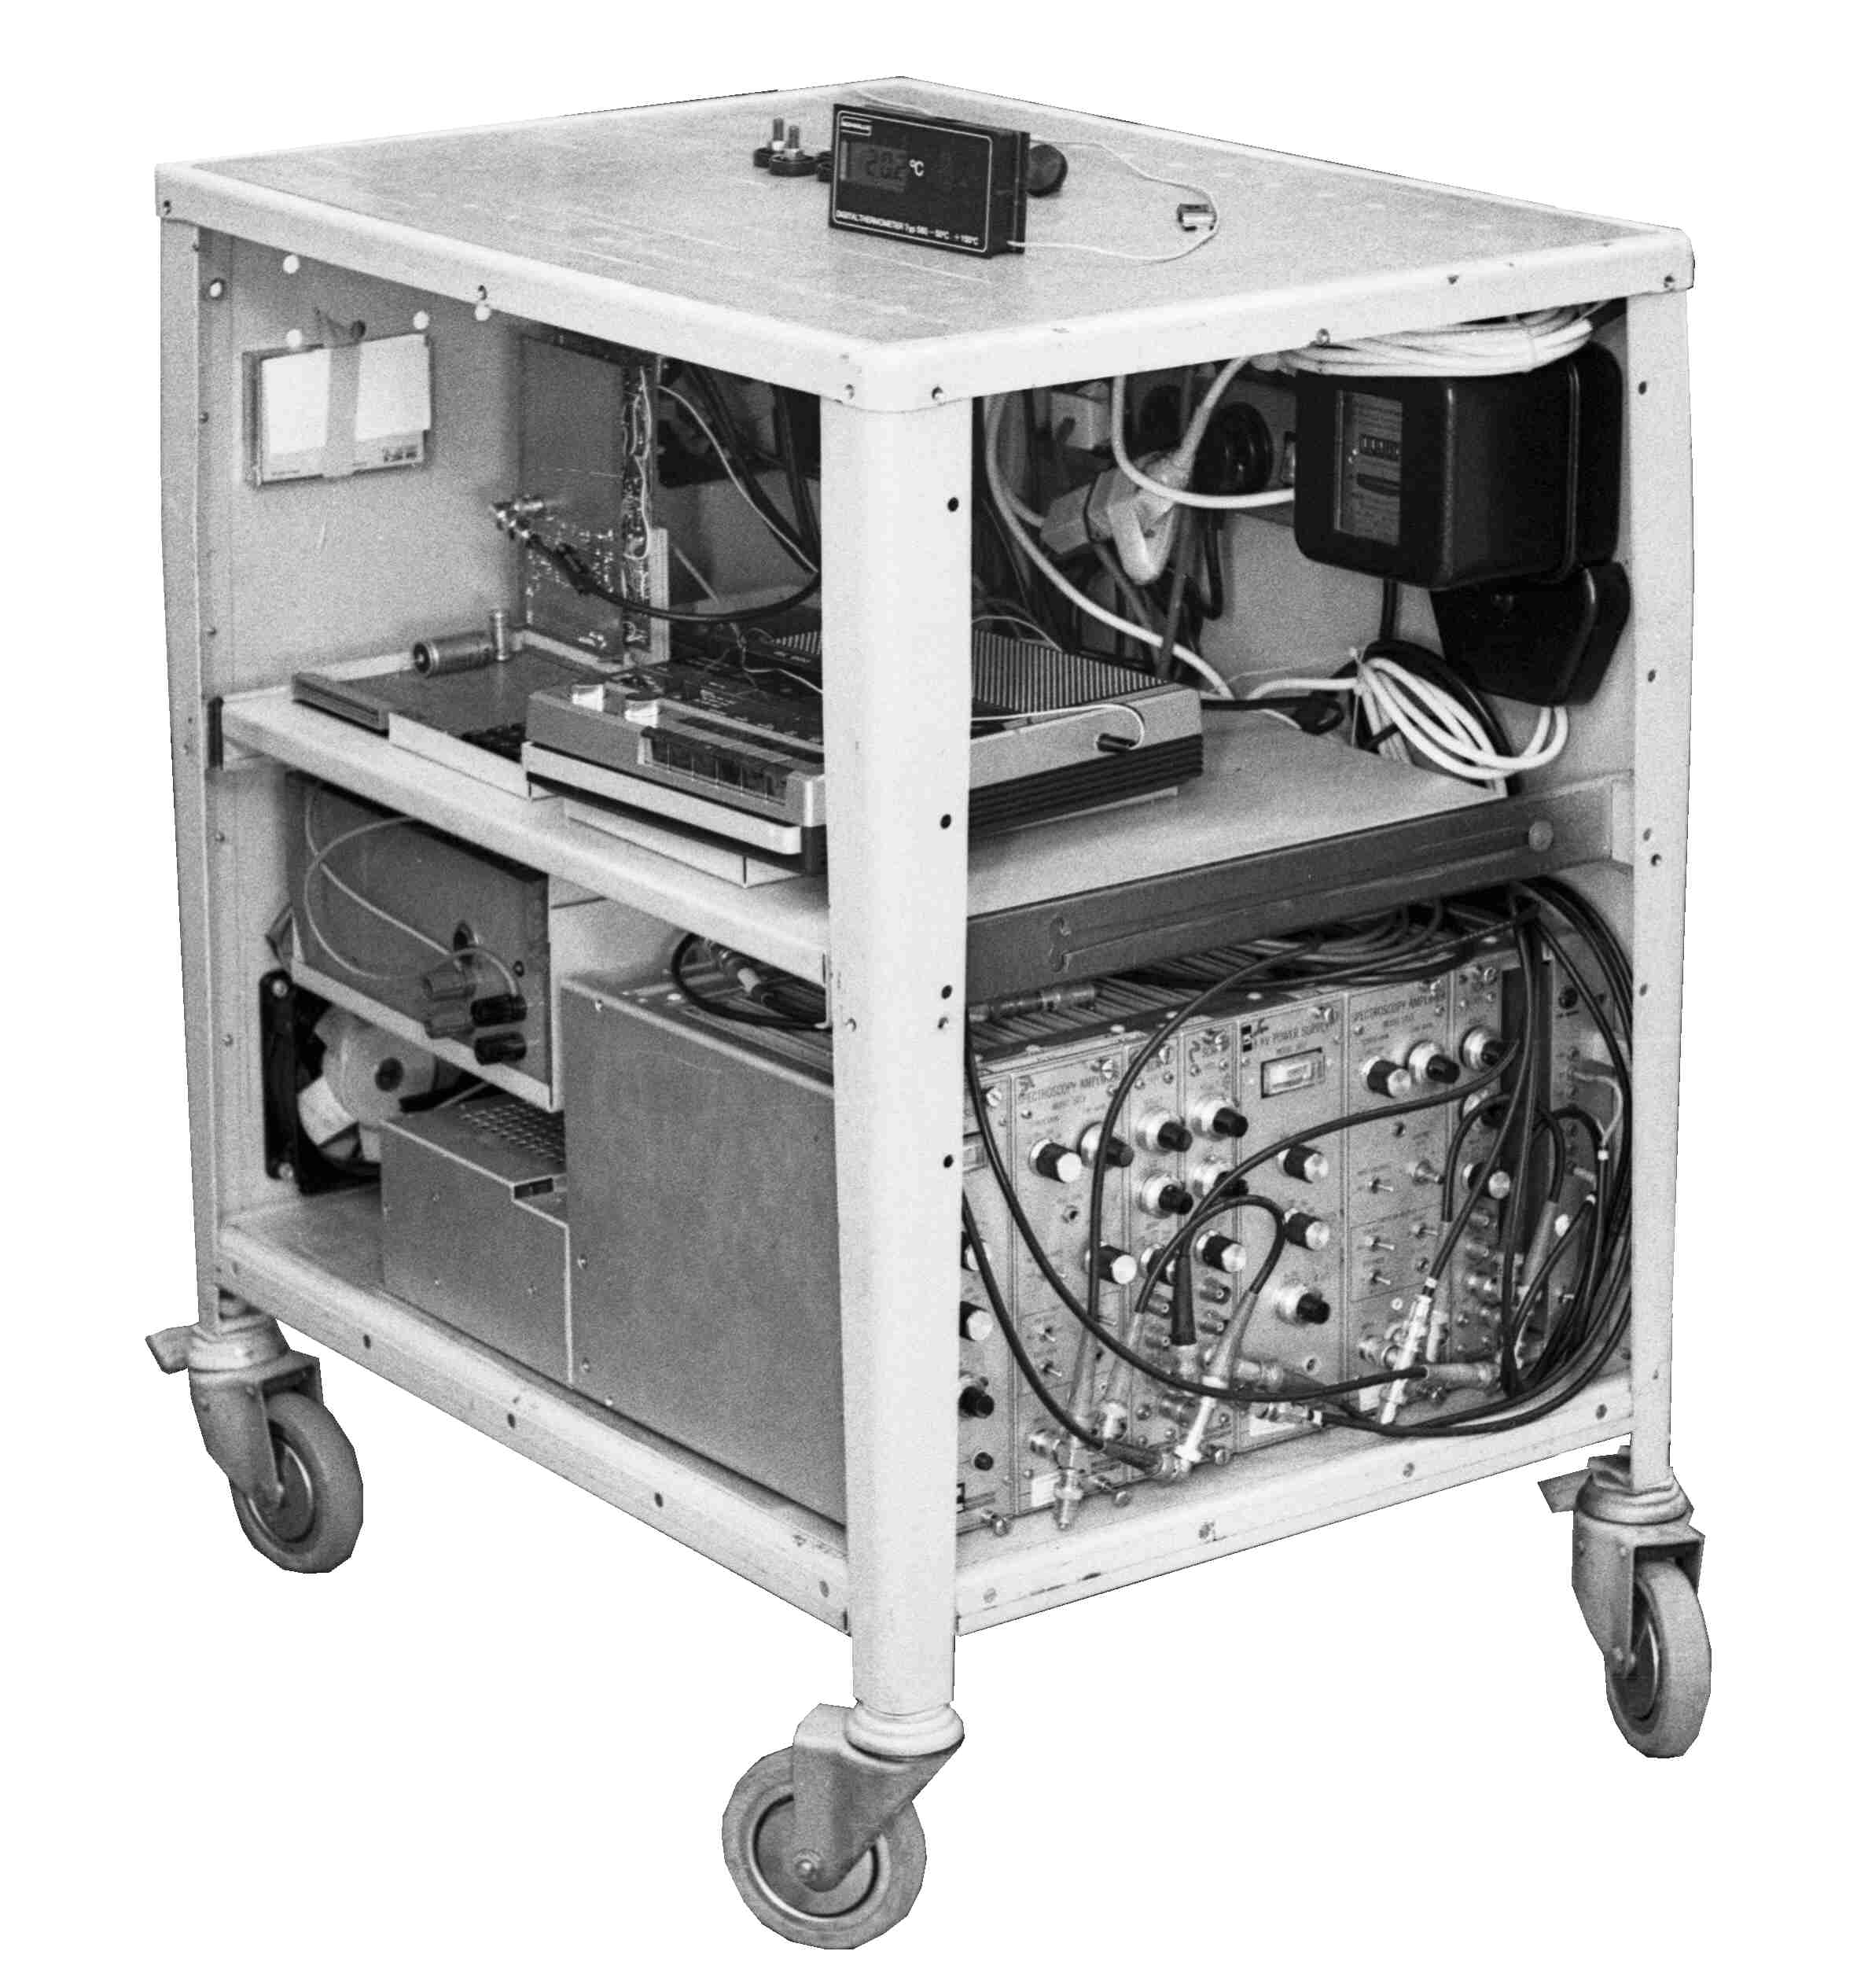 Der Laborwagen mit den Komponenten zum Betrieb der Sensoren und der Elektronik zur Datenaufbereitung und Datenspeicherung auf Magnetband-Cassette